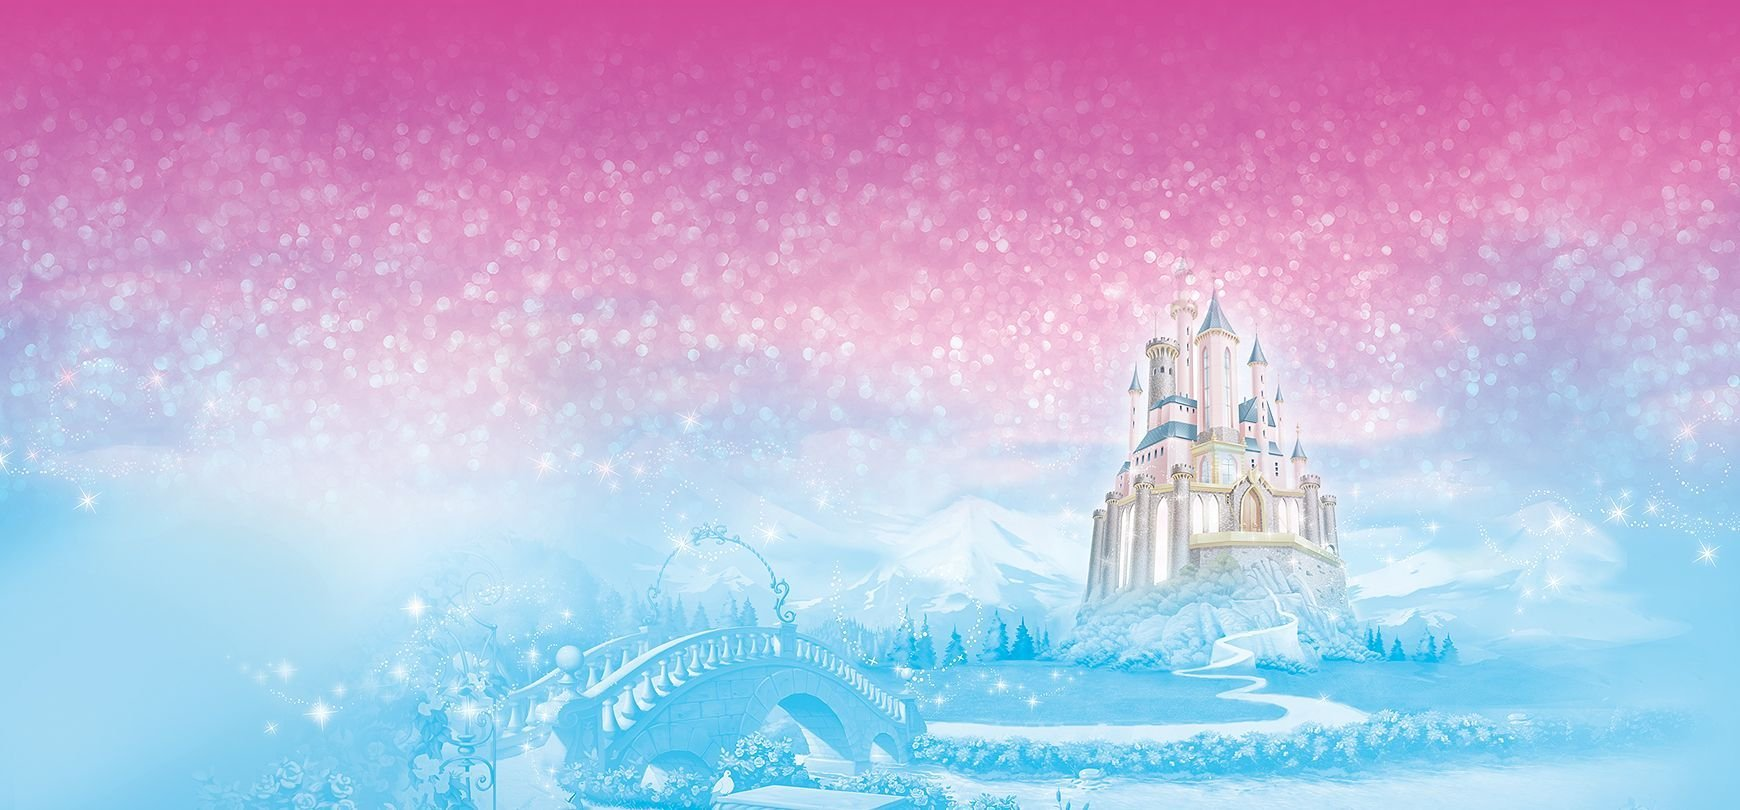 Hình nền Vương quốc Disney màu hồng sẽ đem lại cho bạn sự quyến rũ và quý phái, với nhiều hình ảnh tuyệt đẹp về các công chúa Disney. Và màu hồng chắc chắn sẽ tạo ra sức hấp dẫn đặc biệt với bạn. Hãy tìm kiếm hình nền Vương quốc Disney mà bạn thích và trang trí máy tính của mình ngay hôm nay!